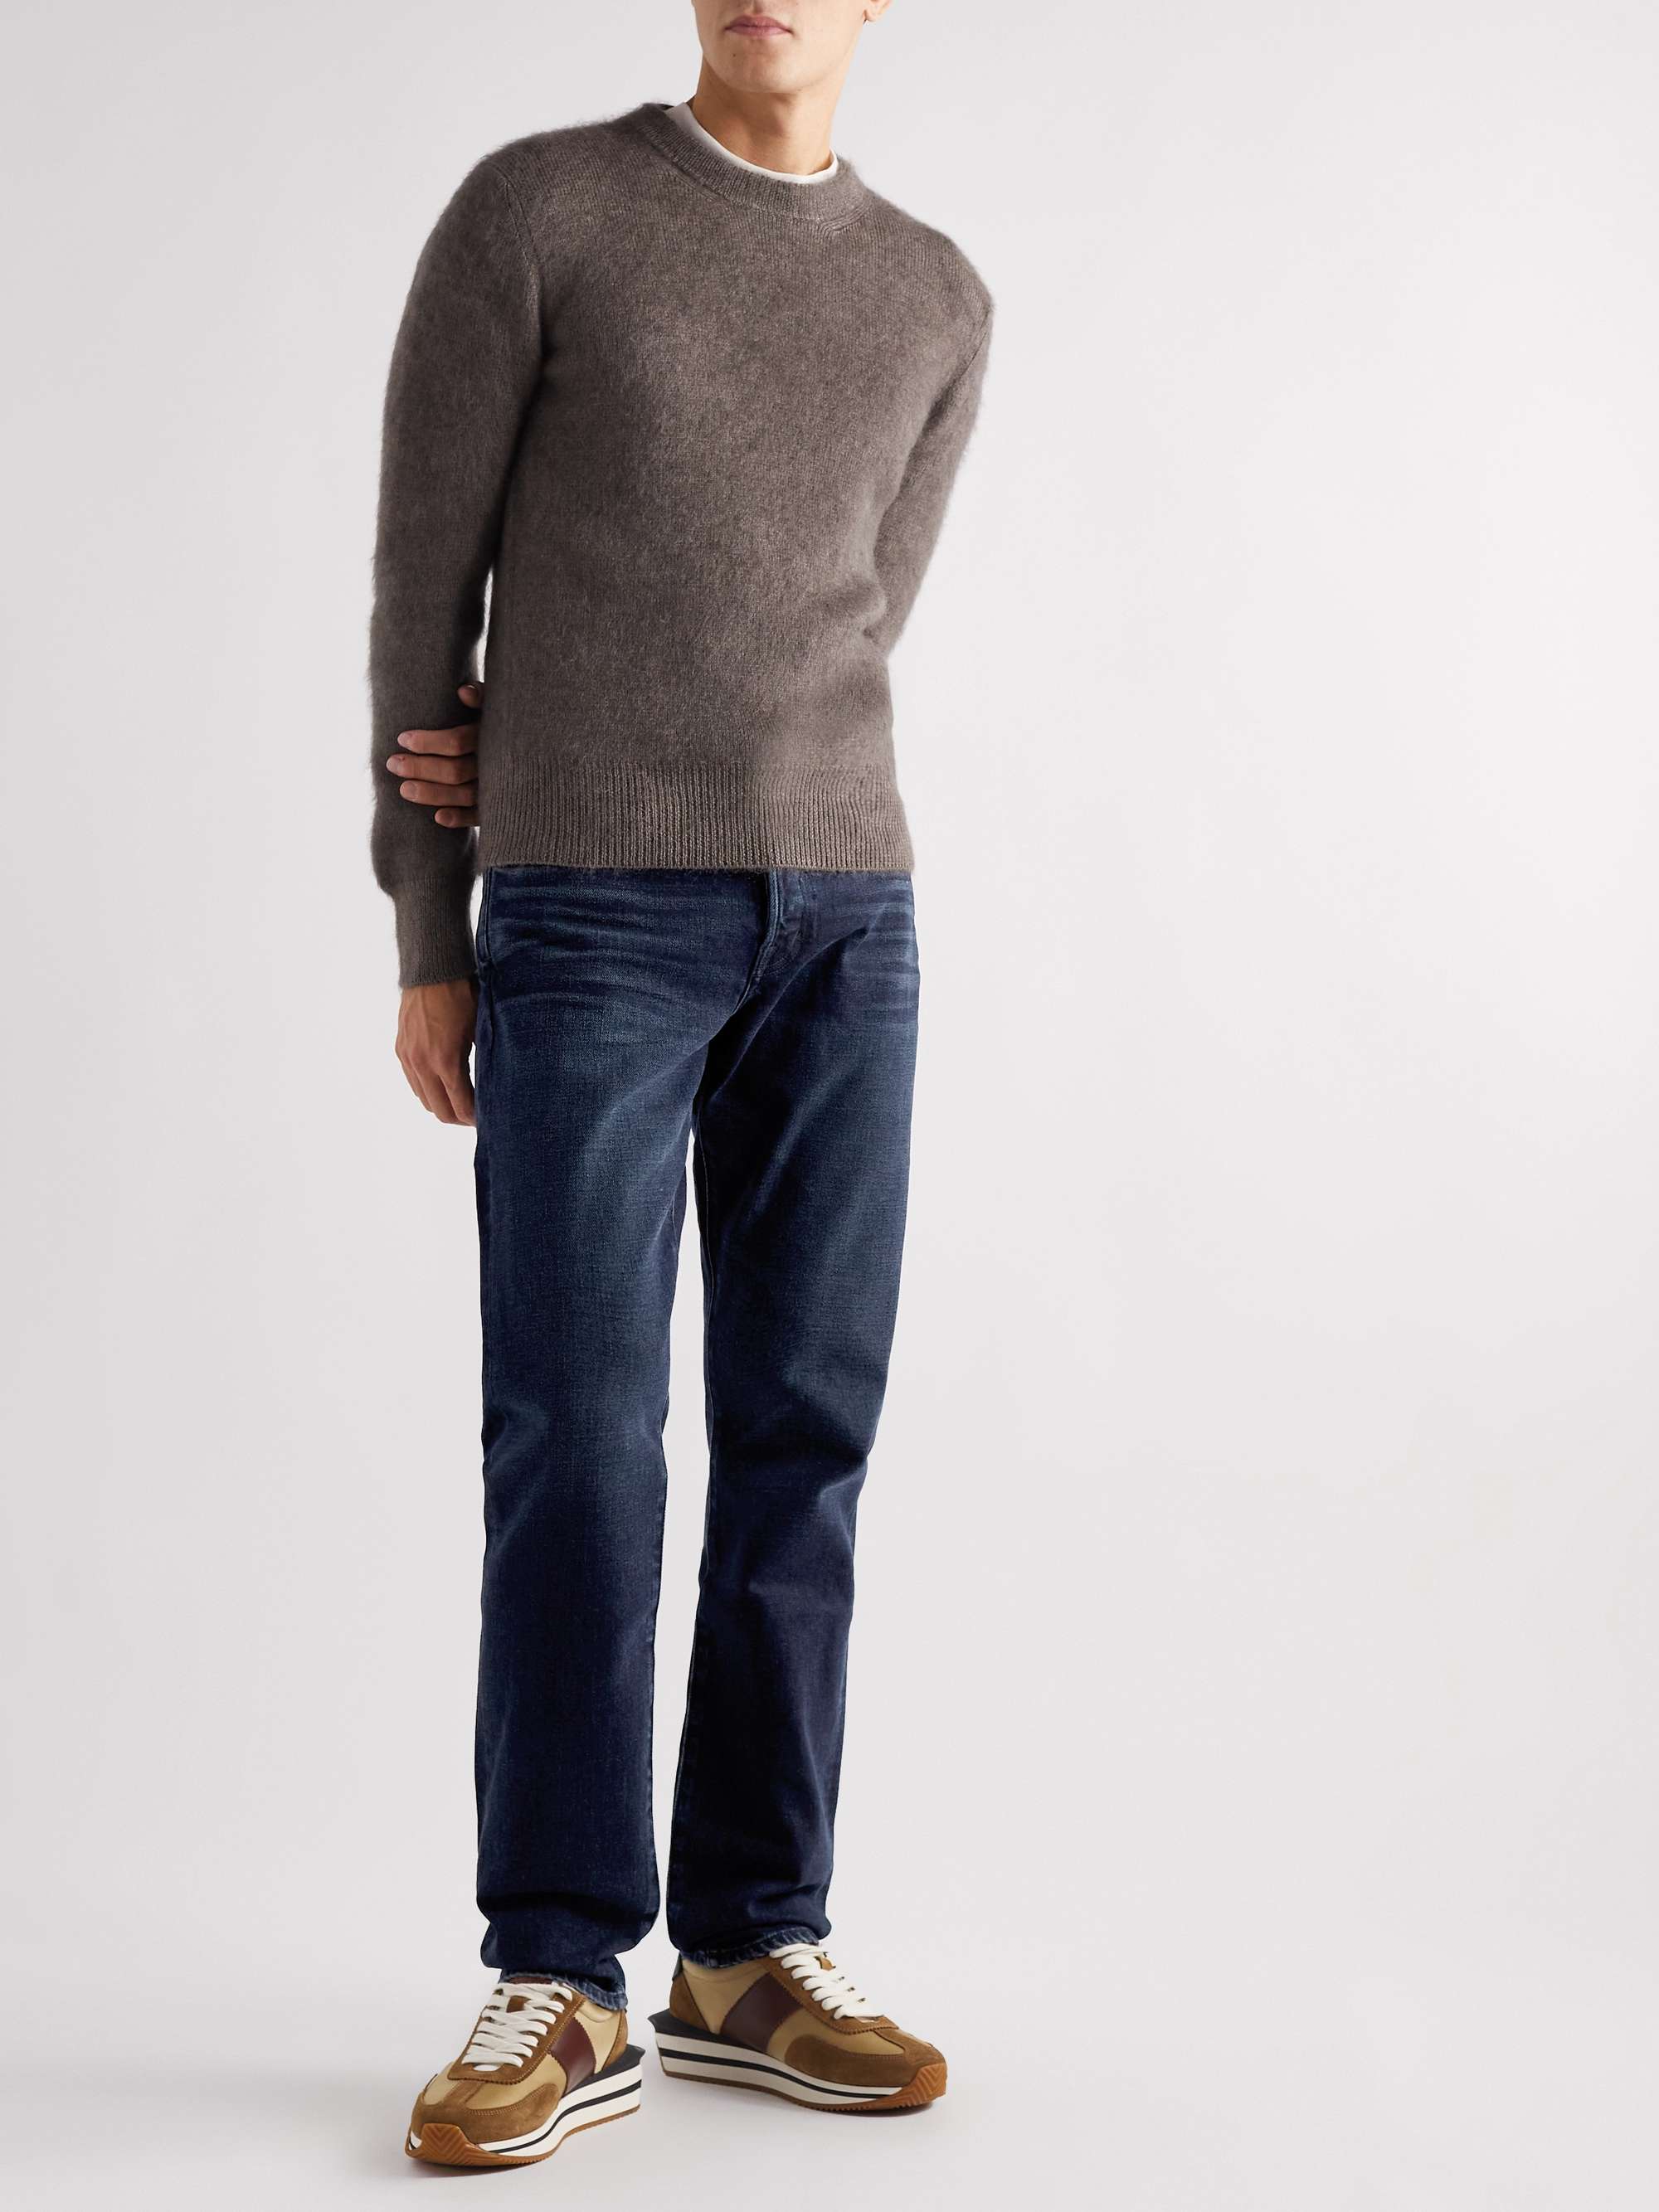 TOM FORD Straight-Leg Garment-Dyed Selvedge Jeans for Men | MR PORTER